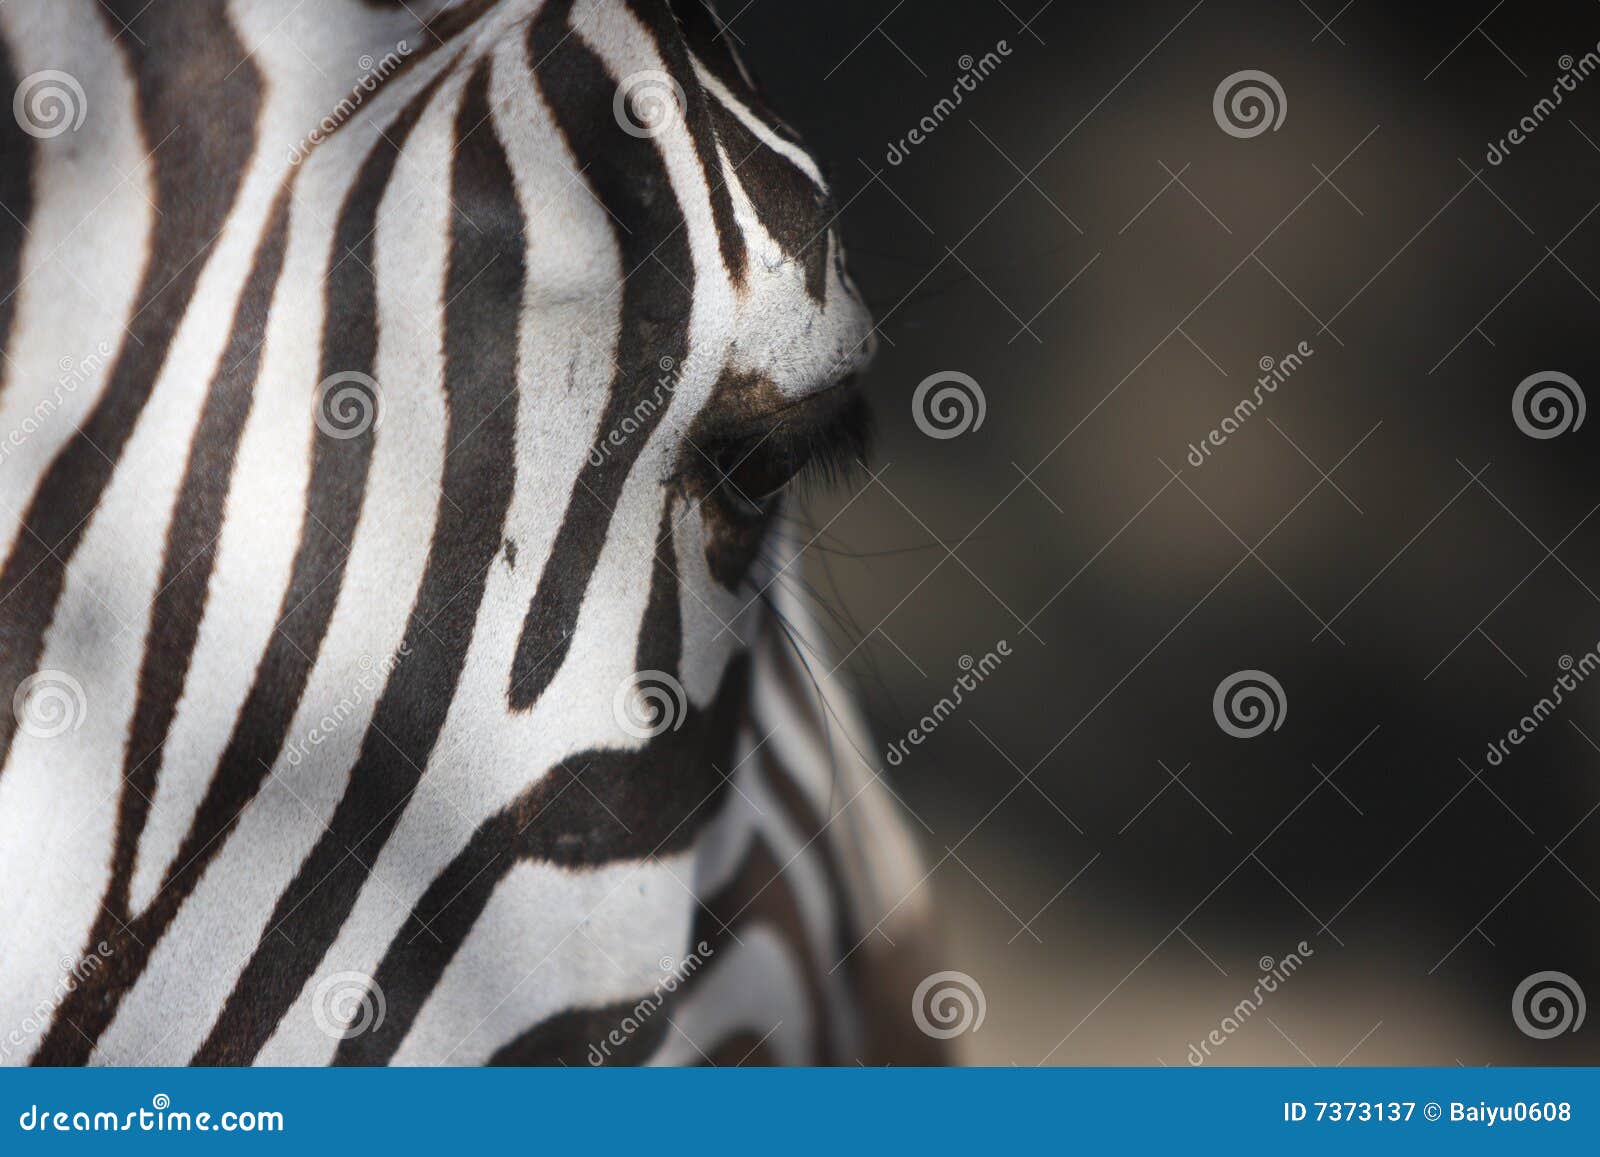 zebra feature